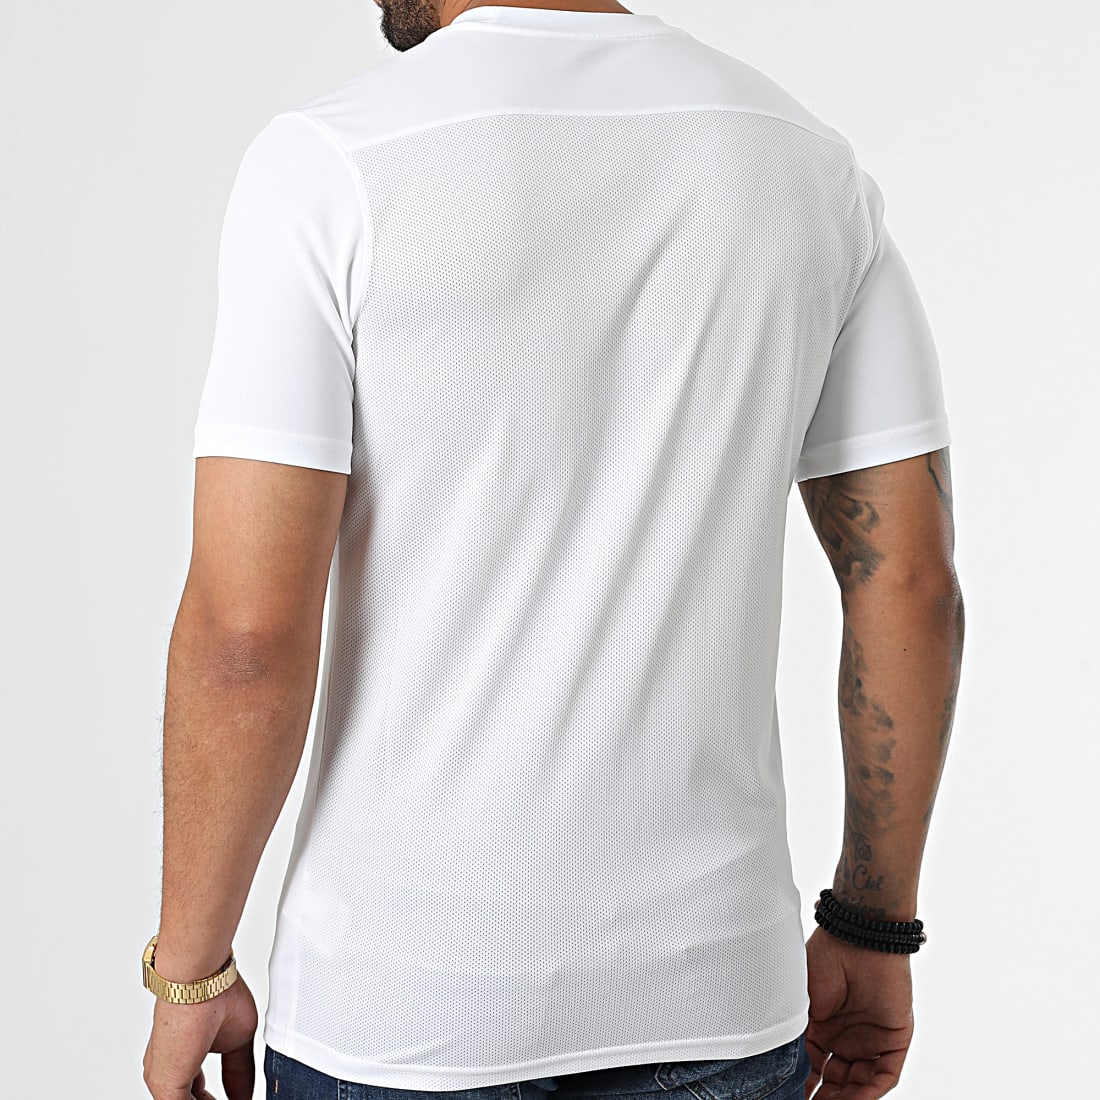 T-shirt homme NIKE Park Vii Blanc - Adulte - Coupe classique Blanc